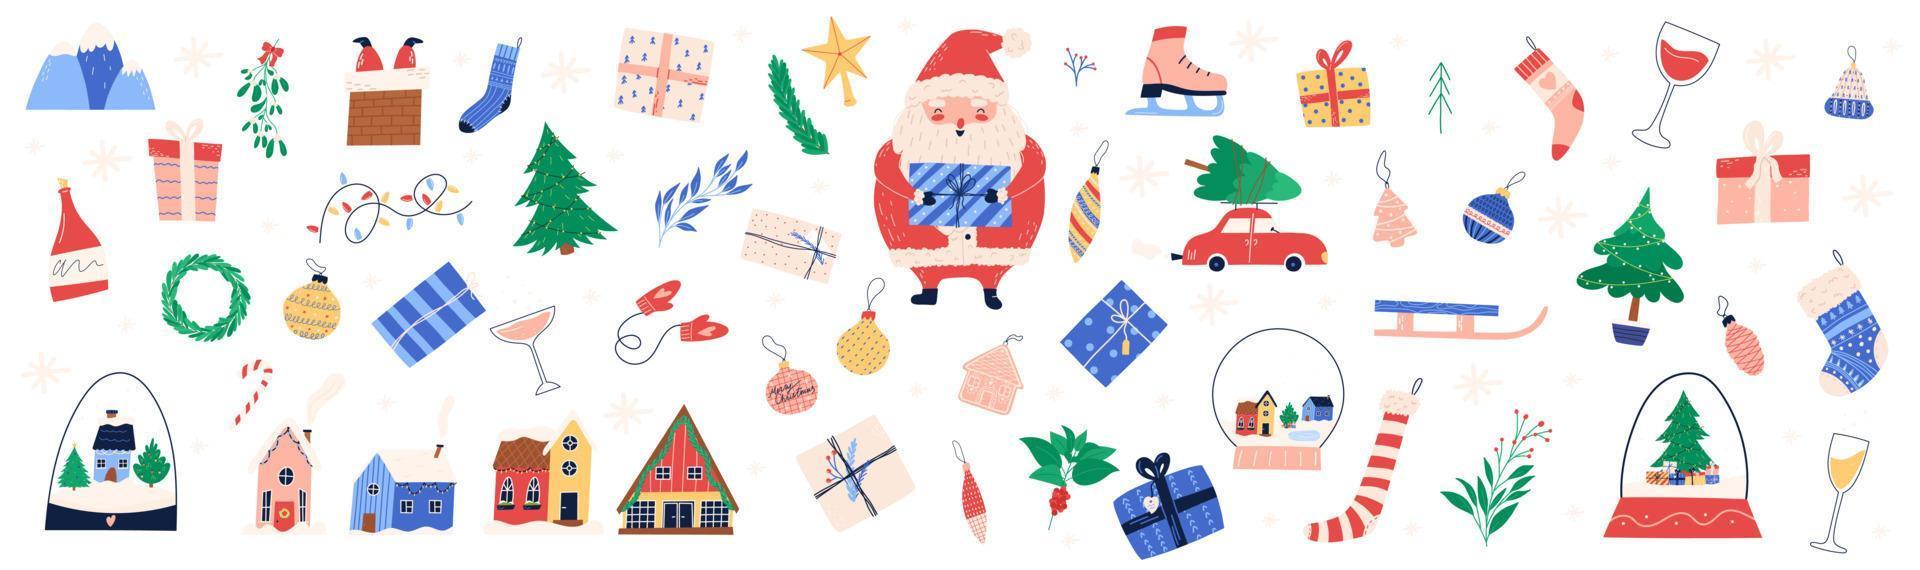 lindo conjunto de elementos de navidad e invierno, ilustración de vector plano de dibujos animados aislado sobre fondo blanco. gran colección de cajas de regalo, casas, plantas y decoraciones dibujadas a mano.